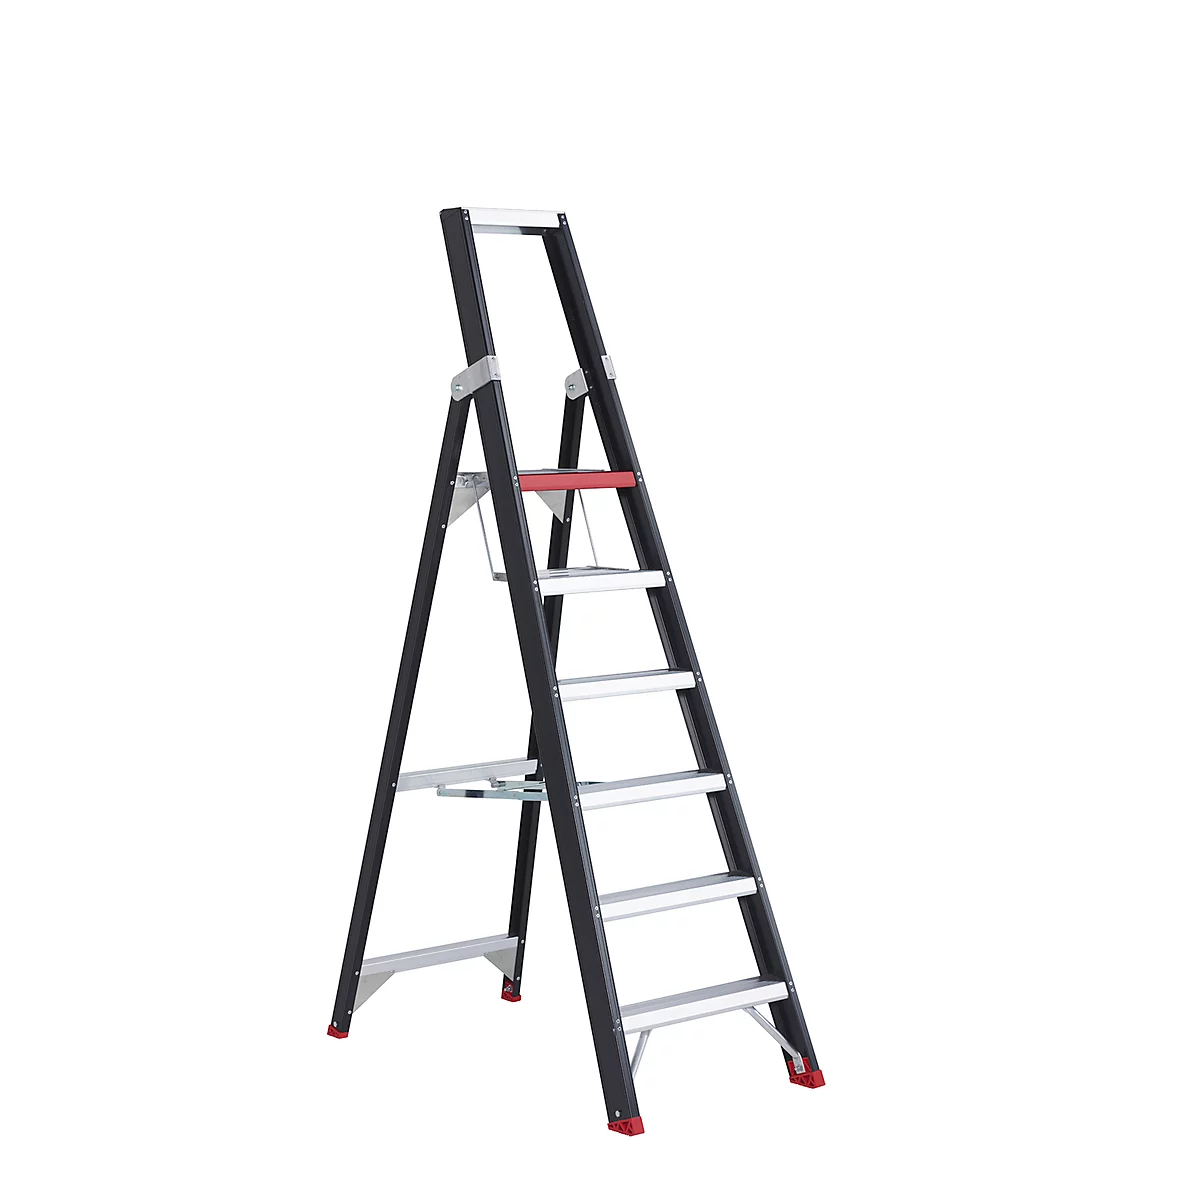 Escalera de tijera Professional Topline, unilateral, aluminio, 6 escalones, negro